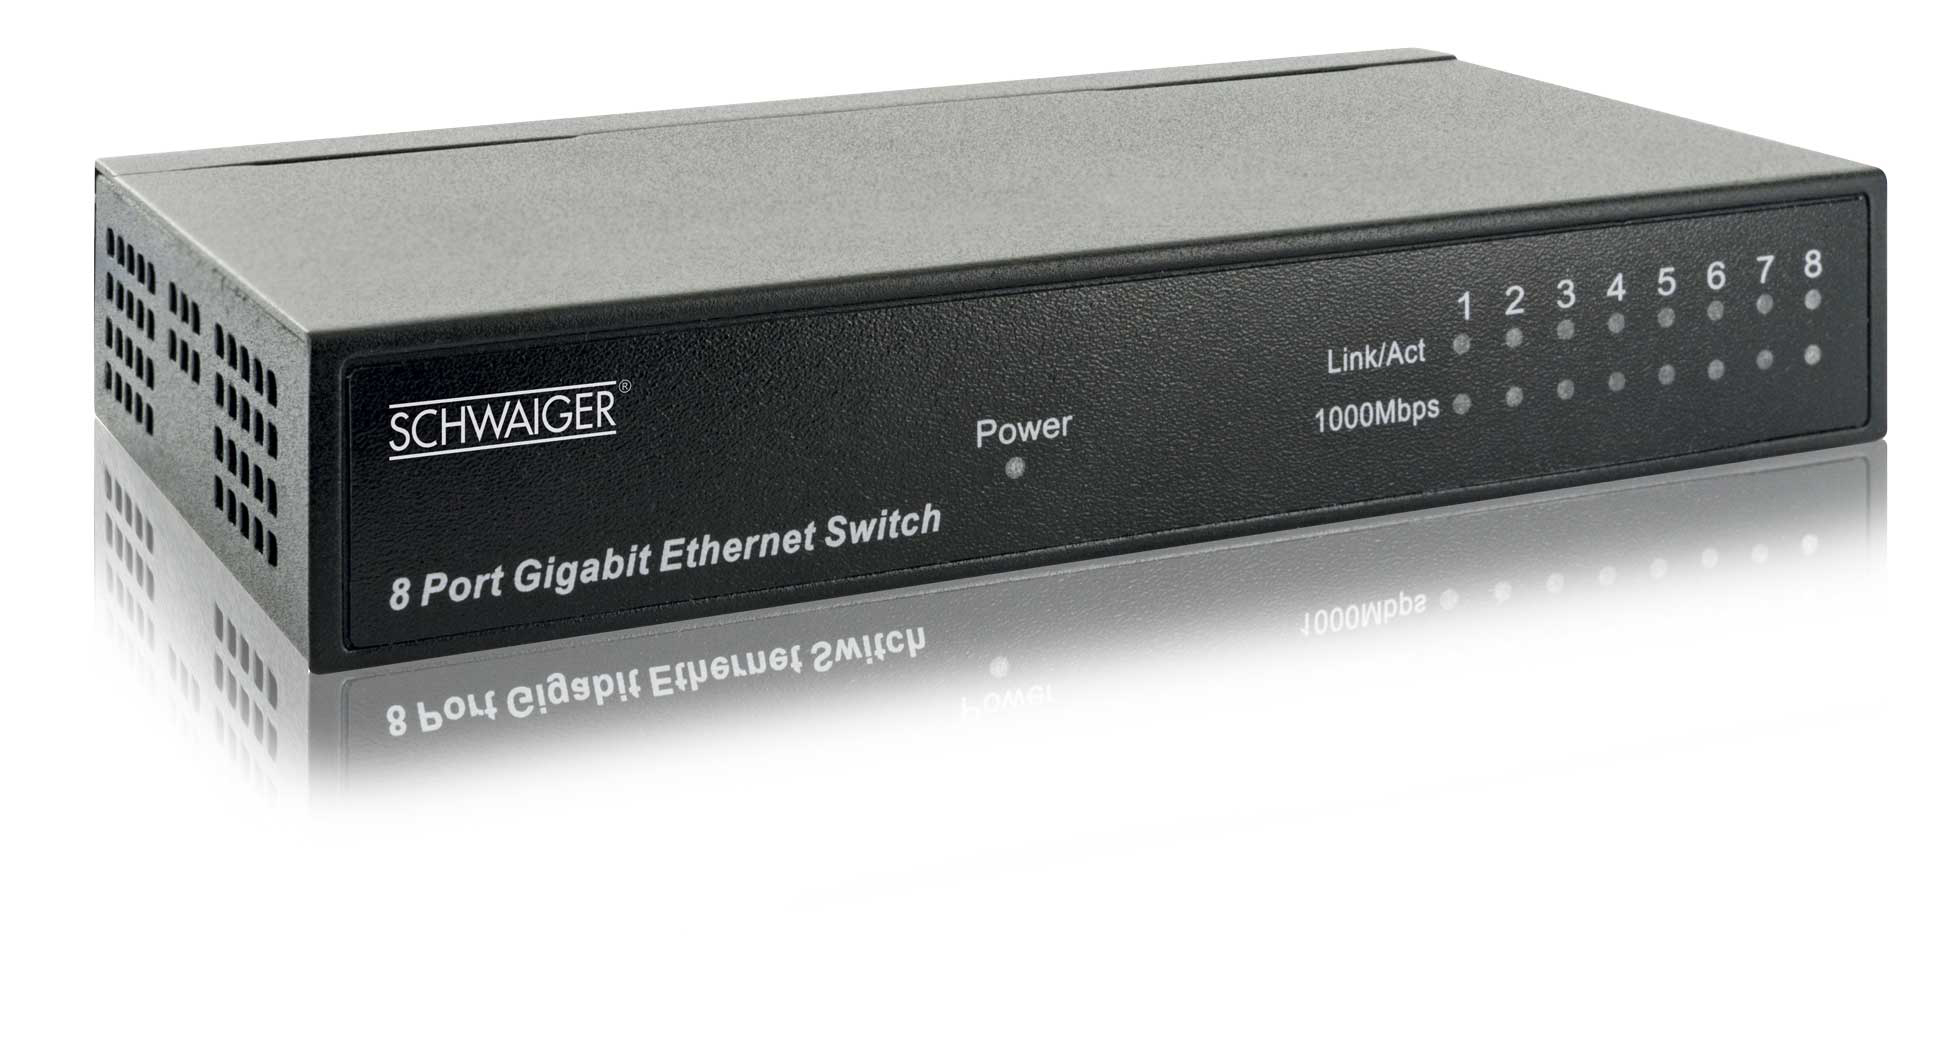 SCHWAIGER Switch -NWSW8 011-, Netzwerk 8-Port